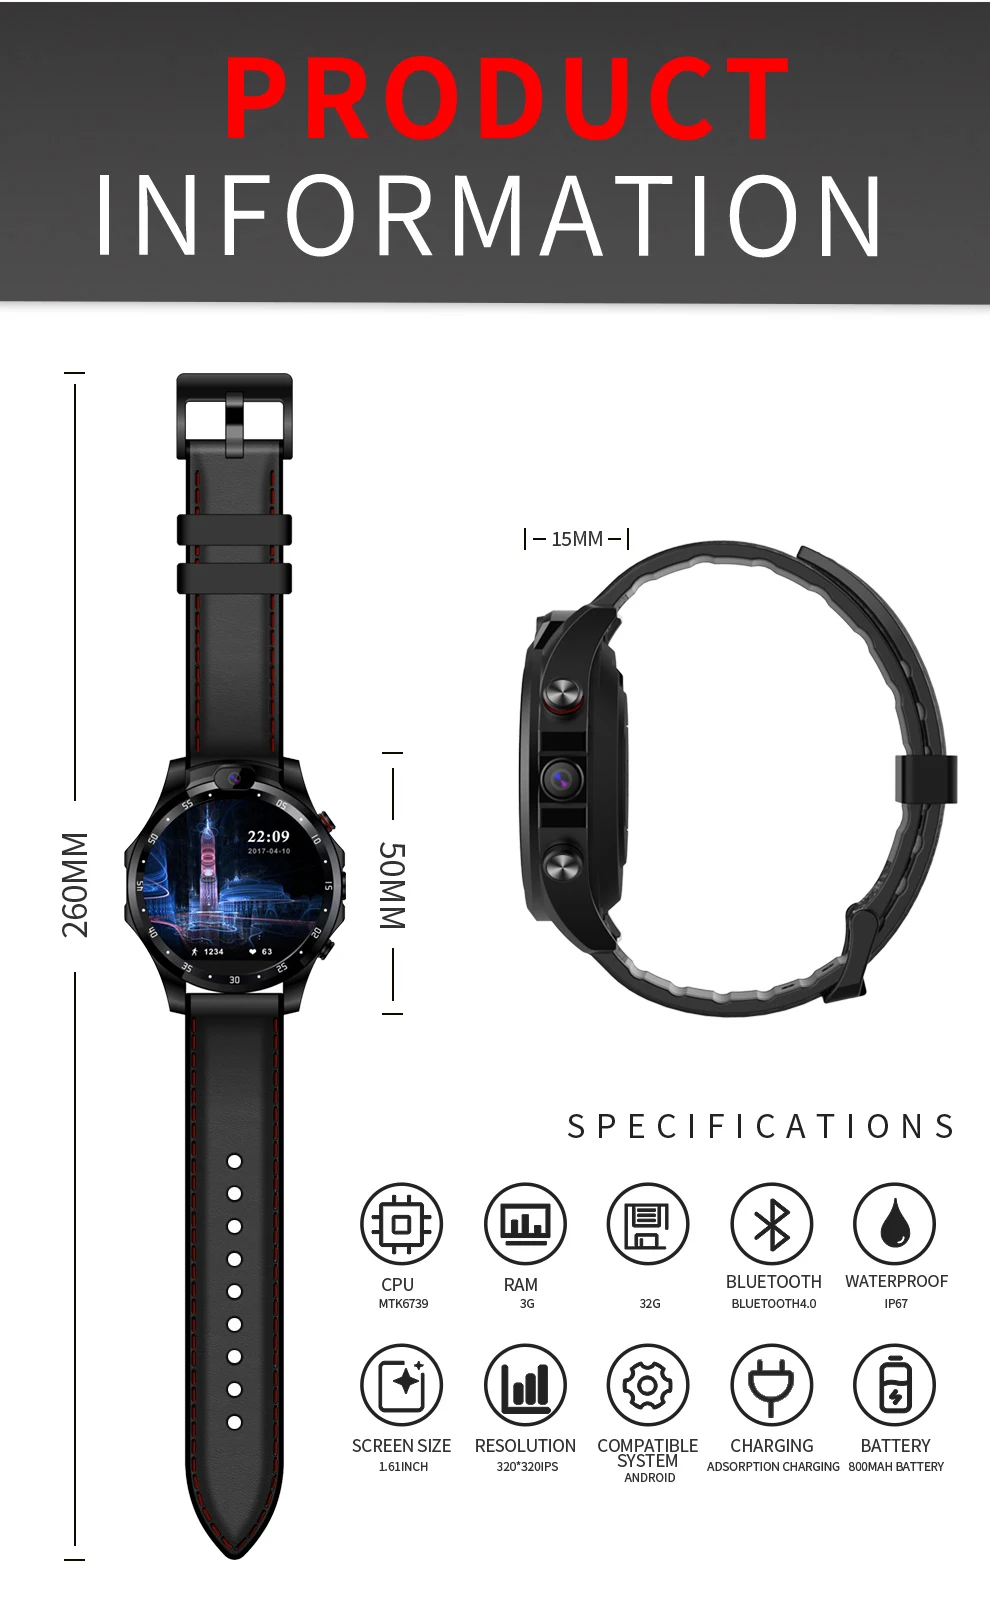 4G netcom Смарт-часы 3+ 32 Гб HD Двойная камера монитор сердечного ритма 1,6 дюймов ips большой экран Поддержка gps Android 7,1 5MP Smartwatch